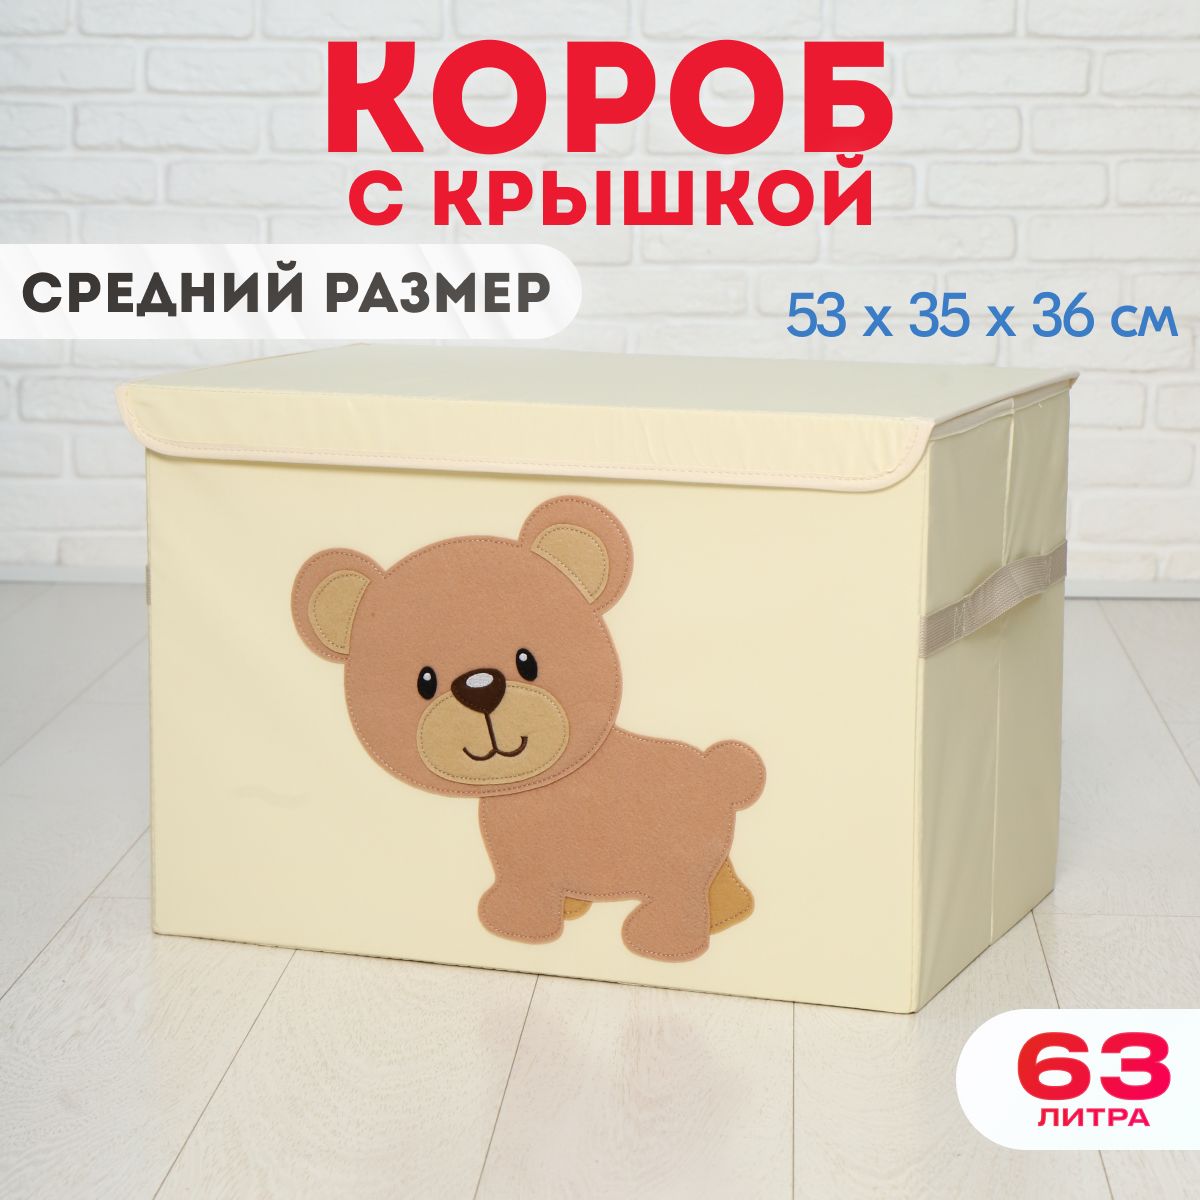 Короб c крышкой HappySava Медведь корзина для хранения игрушек 63 литра